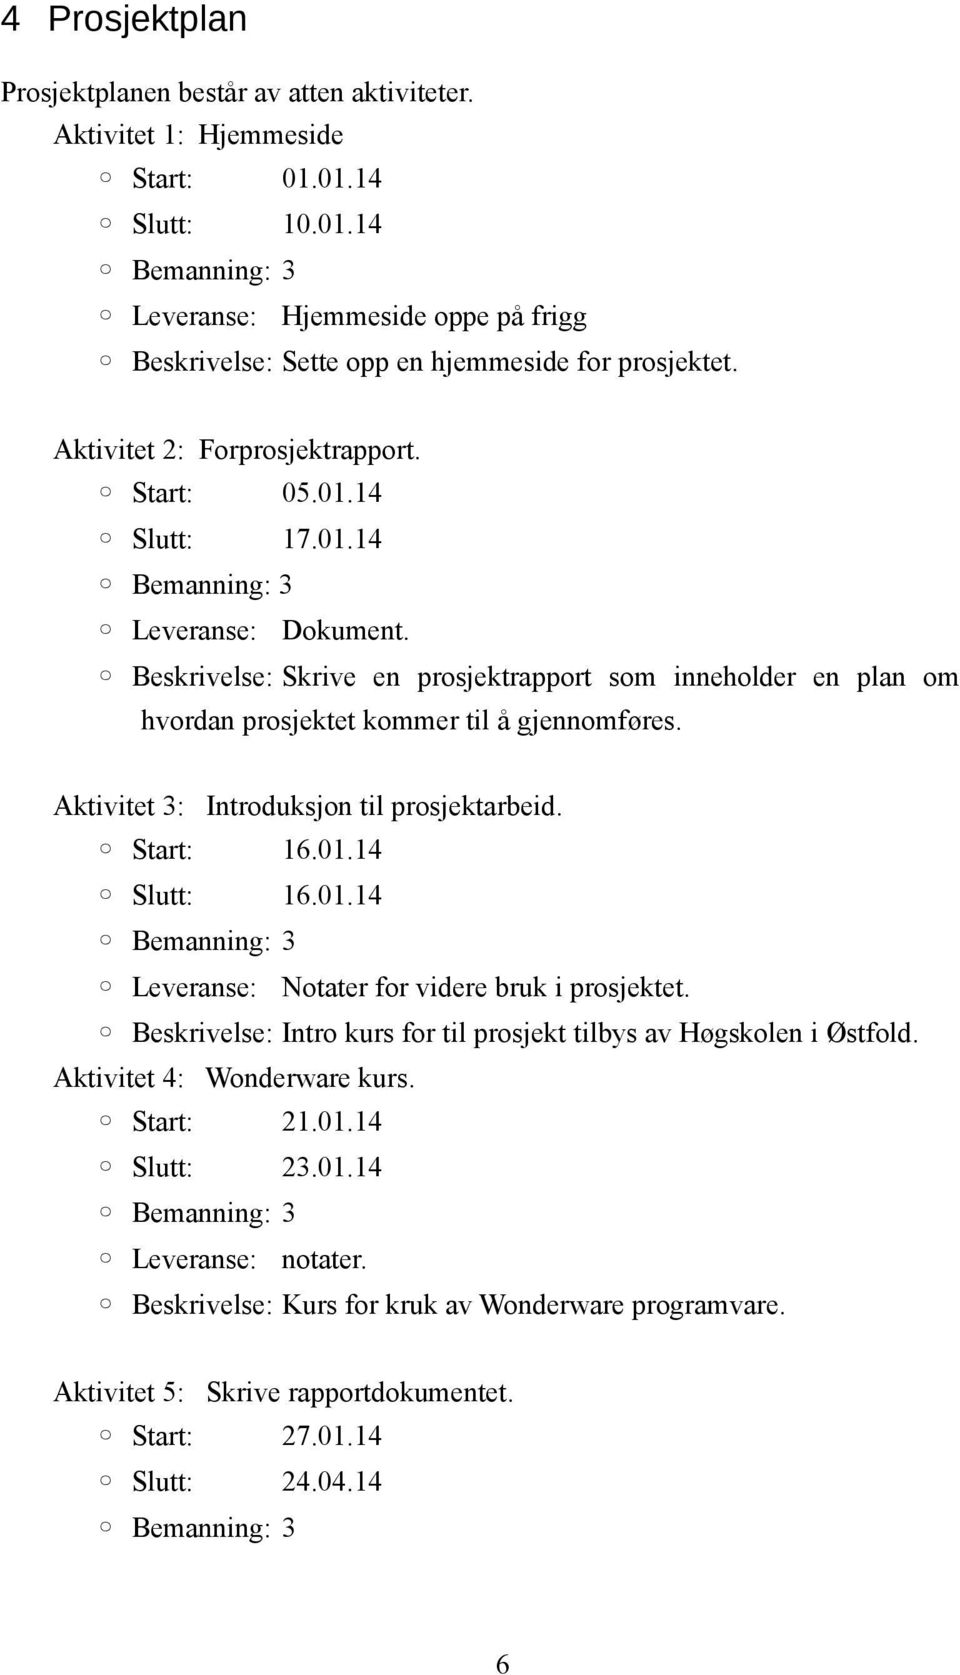 Aktivitet 3: Introduksjon til prosjektarbeid. Start: 16.01.14 Slutt: 16.01.14 Leveranse: Notater for videre bruk i prosjektet. Beskrivelse: Intro kurs for til prosjekt tilbys av Høgskolen i Østfold.